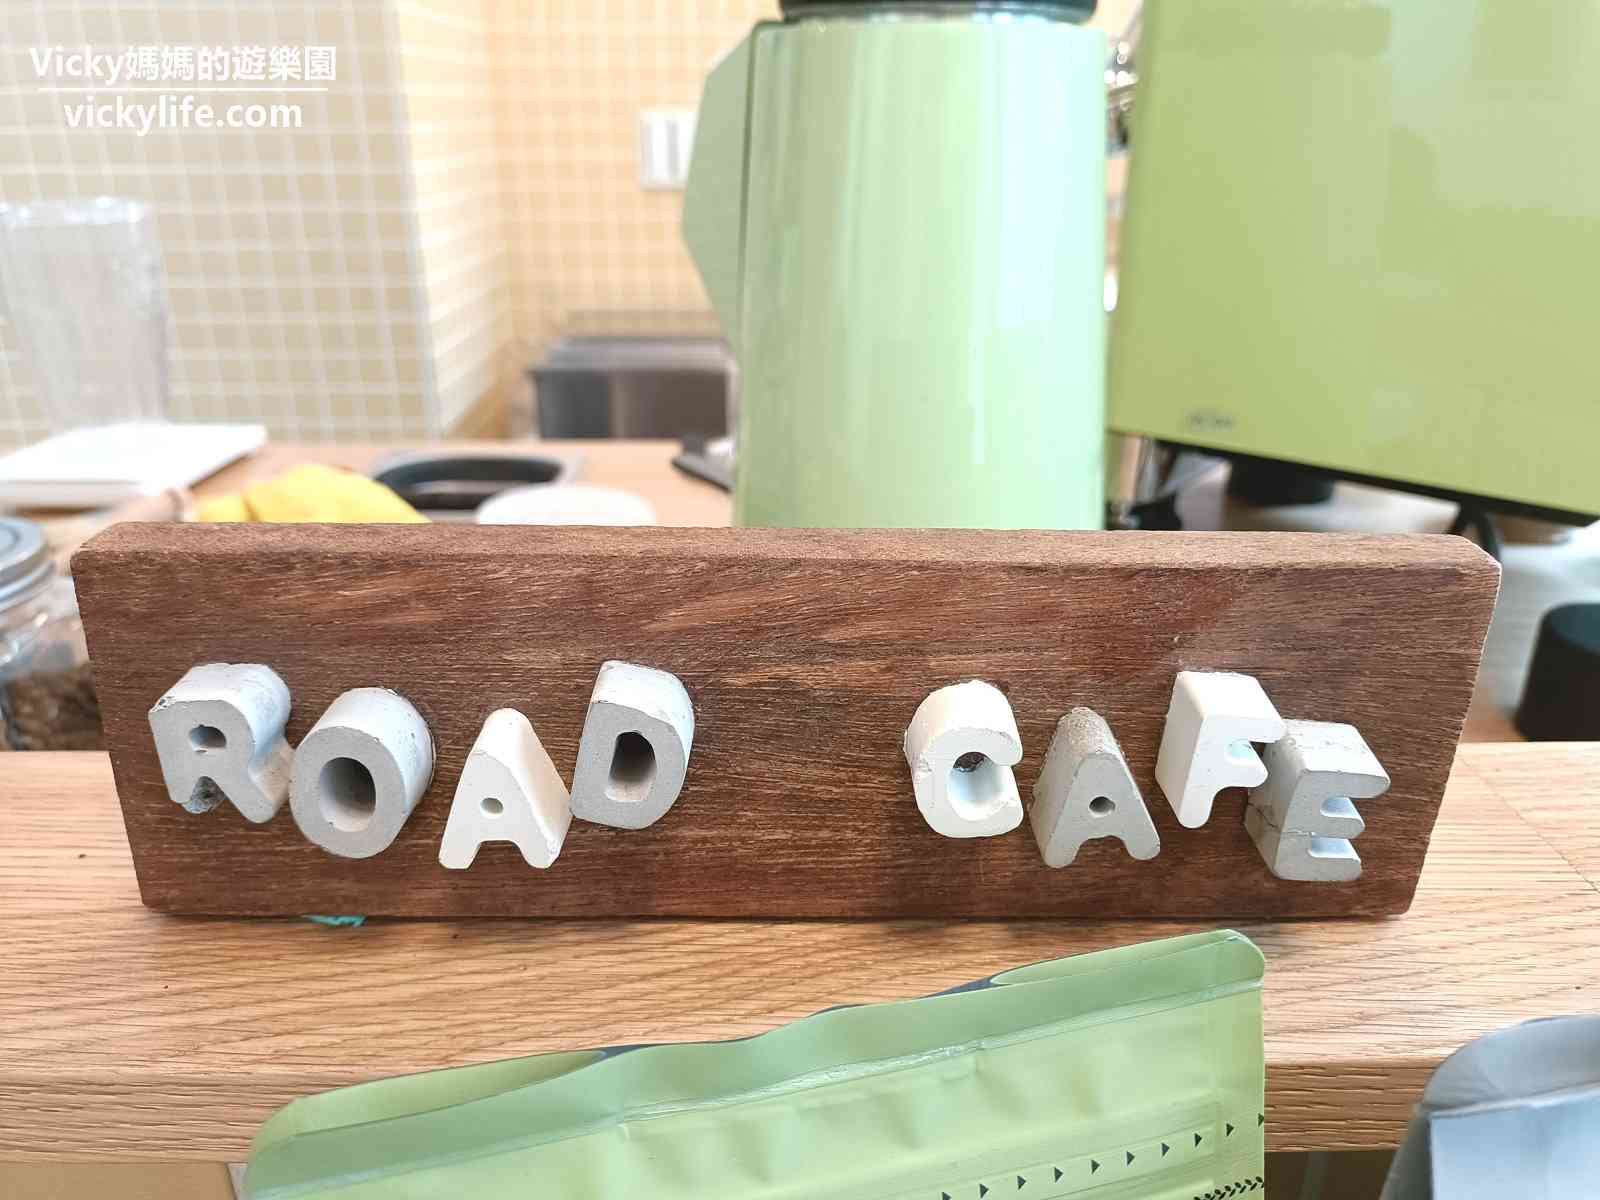 台南咖啡︱路咖啡新美店 2nd Road Cafe：小清新咖啡館2店開張了，居家風格好討喜(菜單)